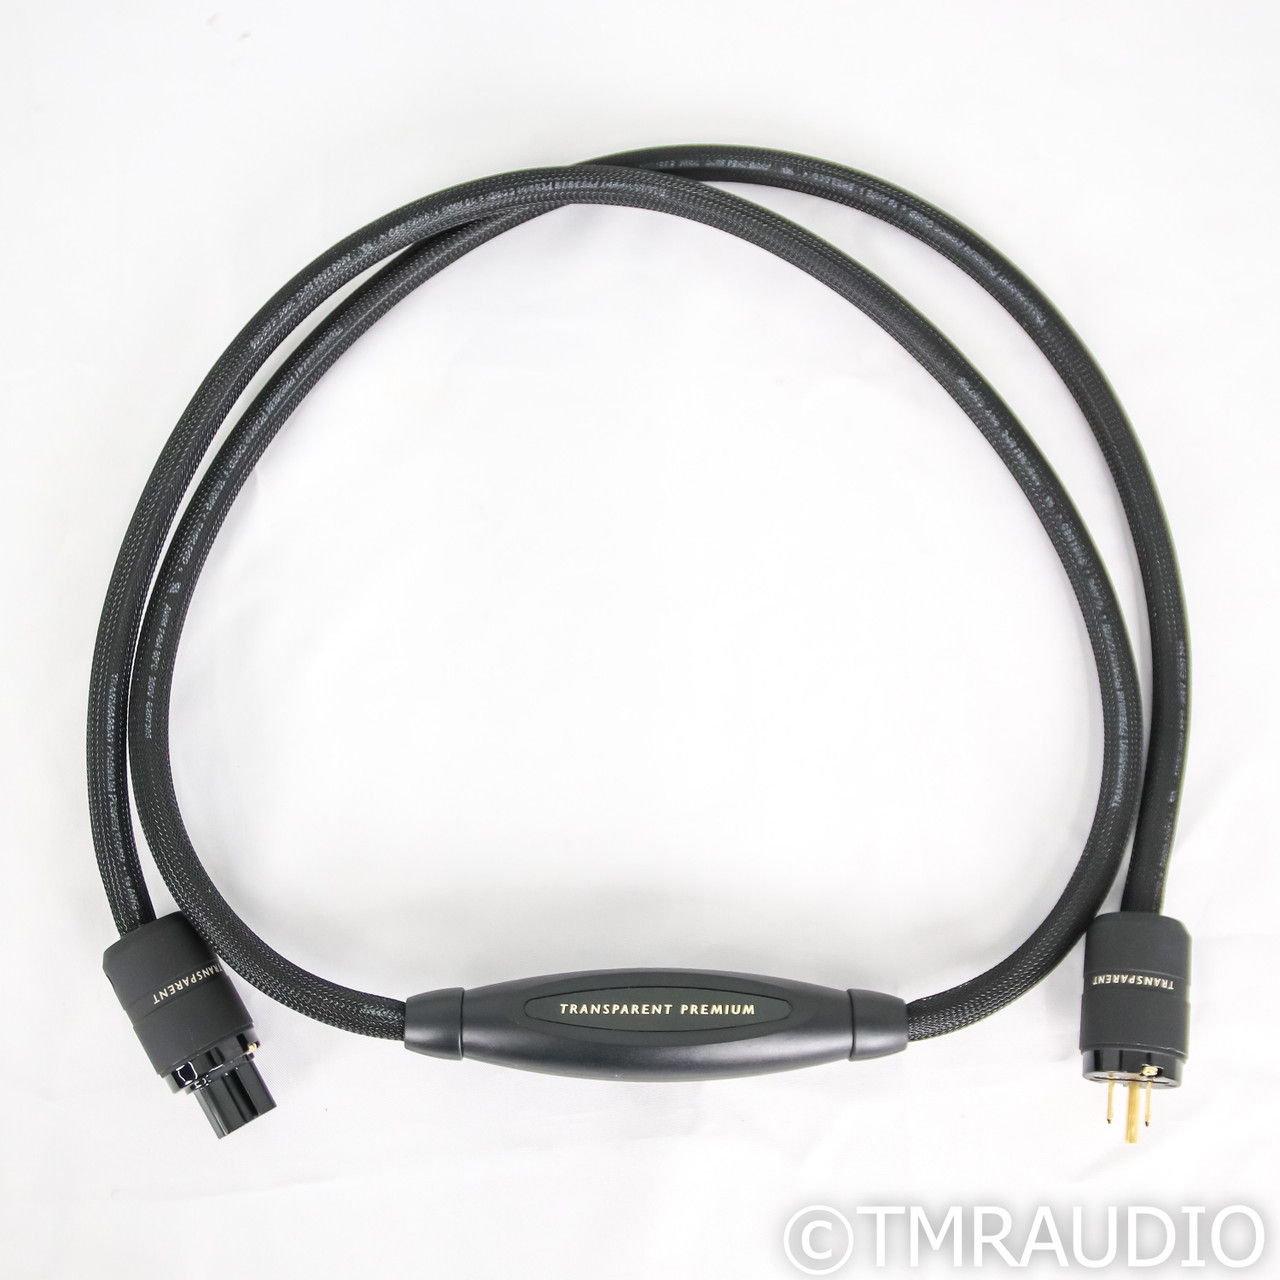 Transparent Audio Premium Power Cable; 2m AC Cord (65003) 3